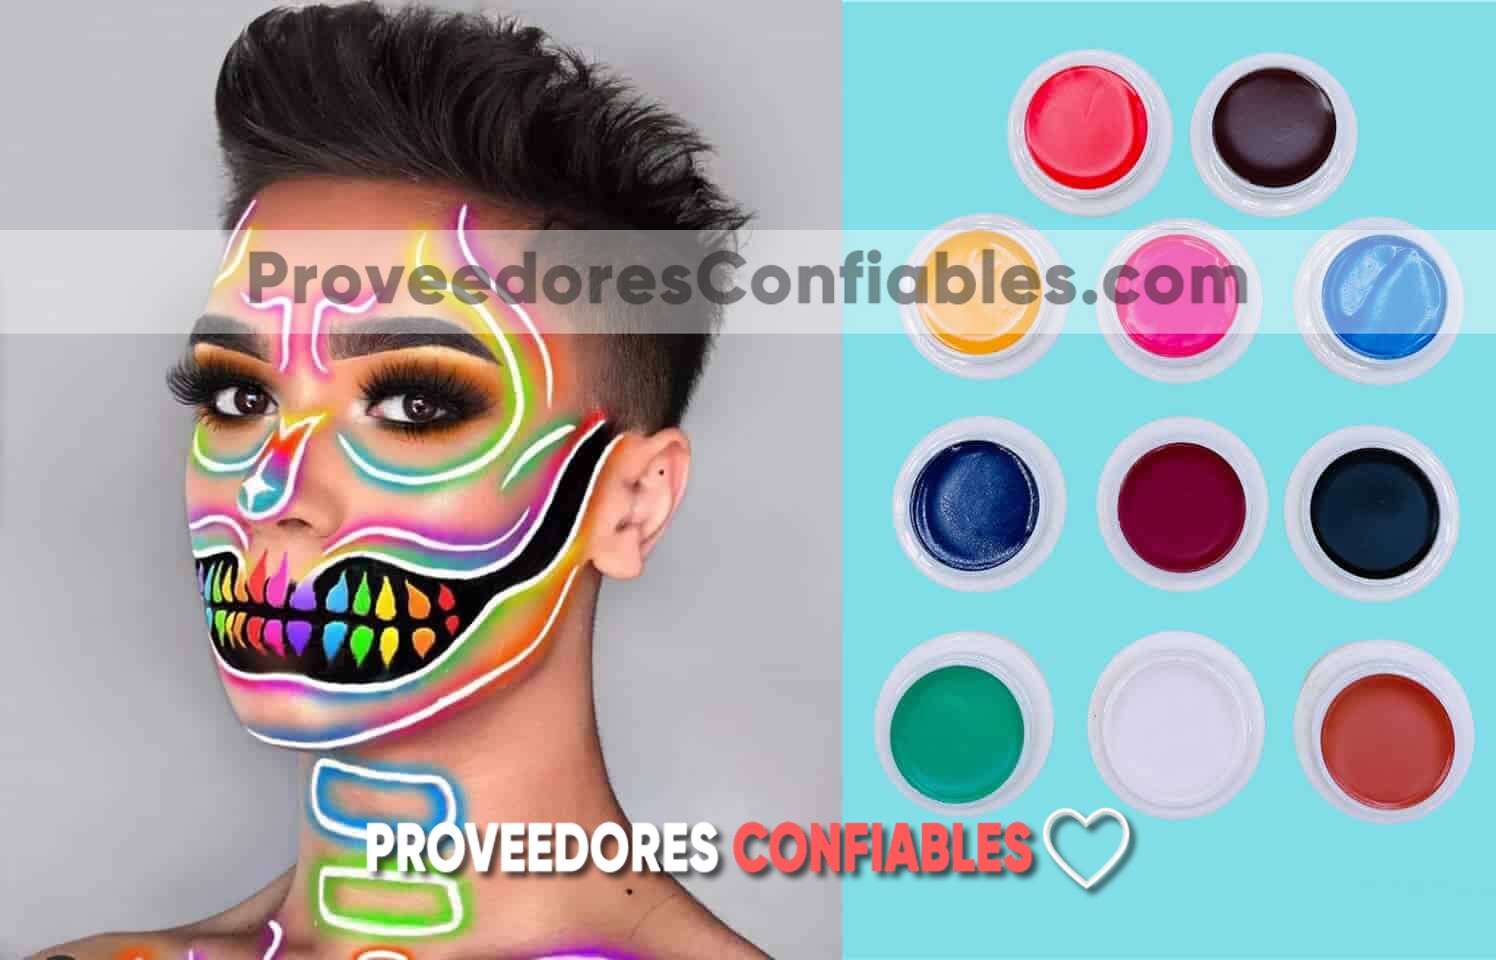 Sombras Para Ojos Rostro Maquillaje En Crema Halloween Mayoreo Proveedores Confiables M5378 1 Jpg